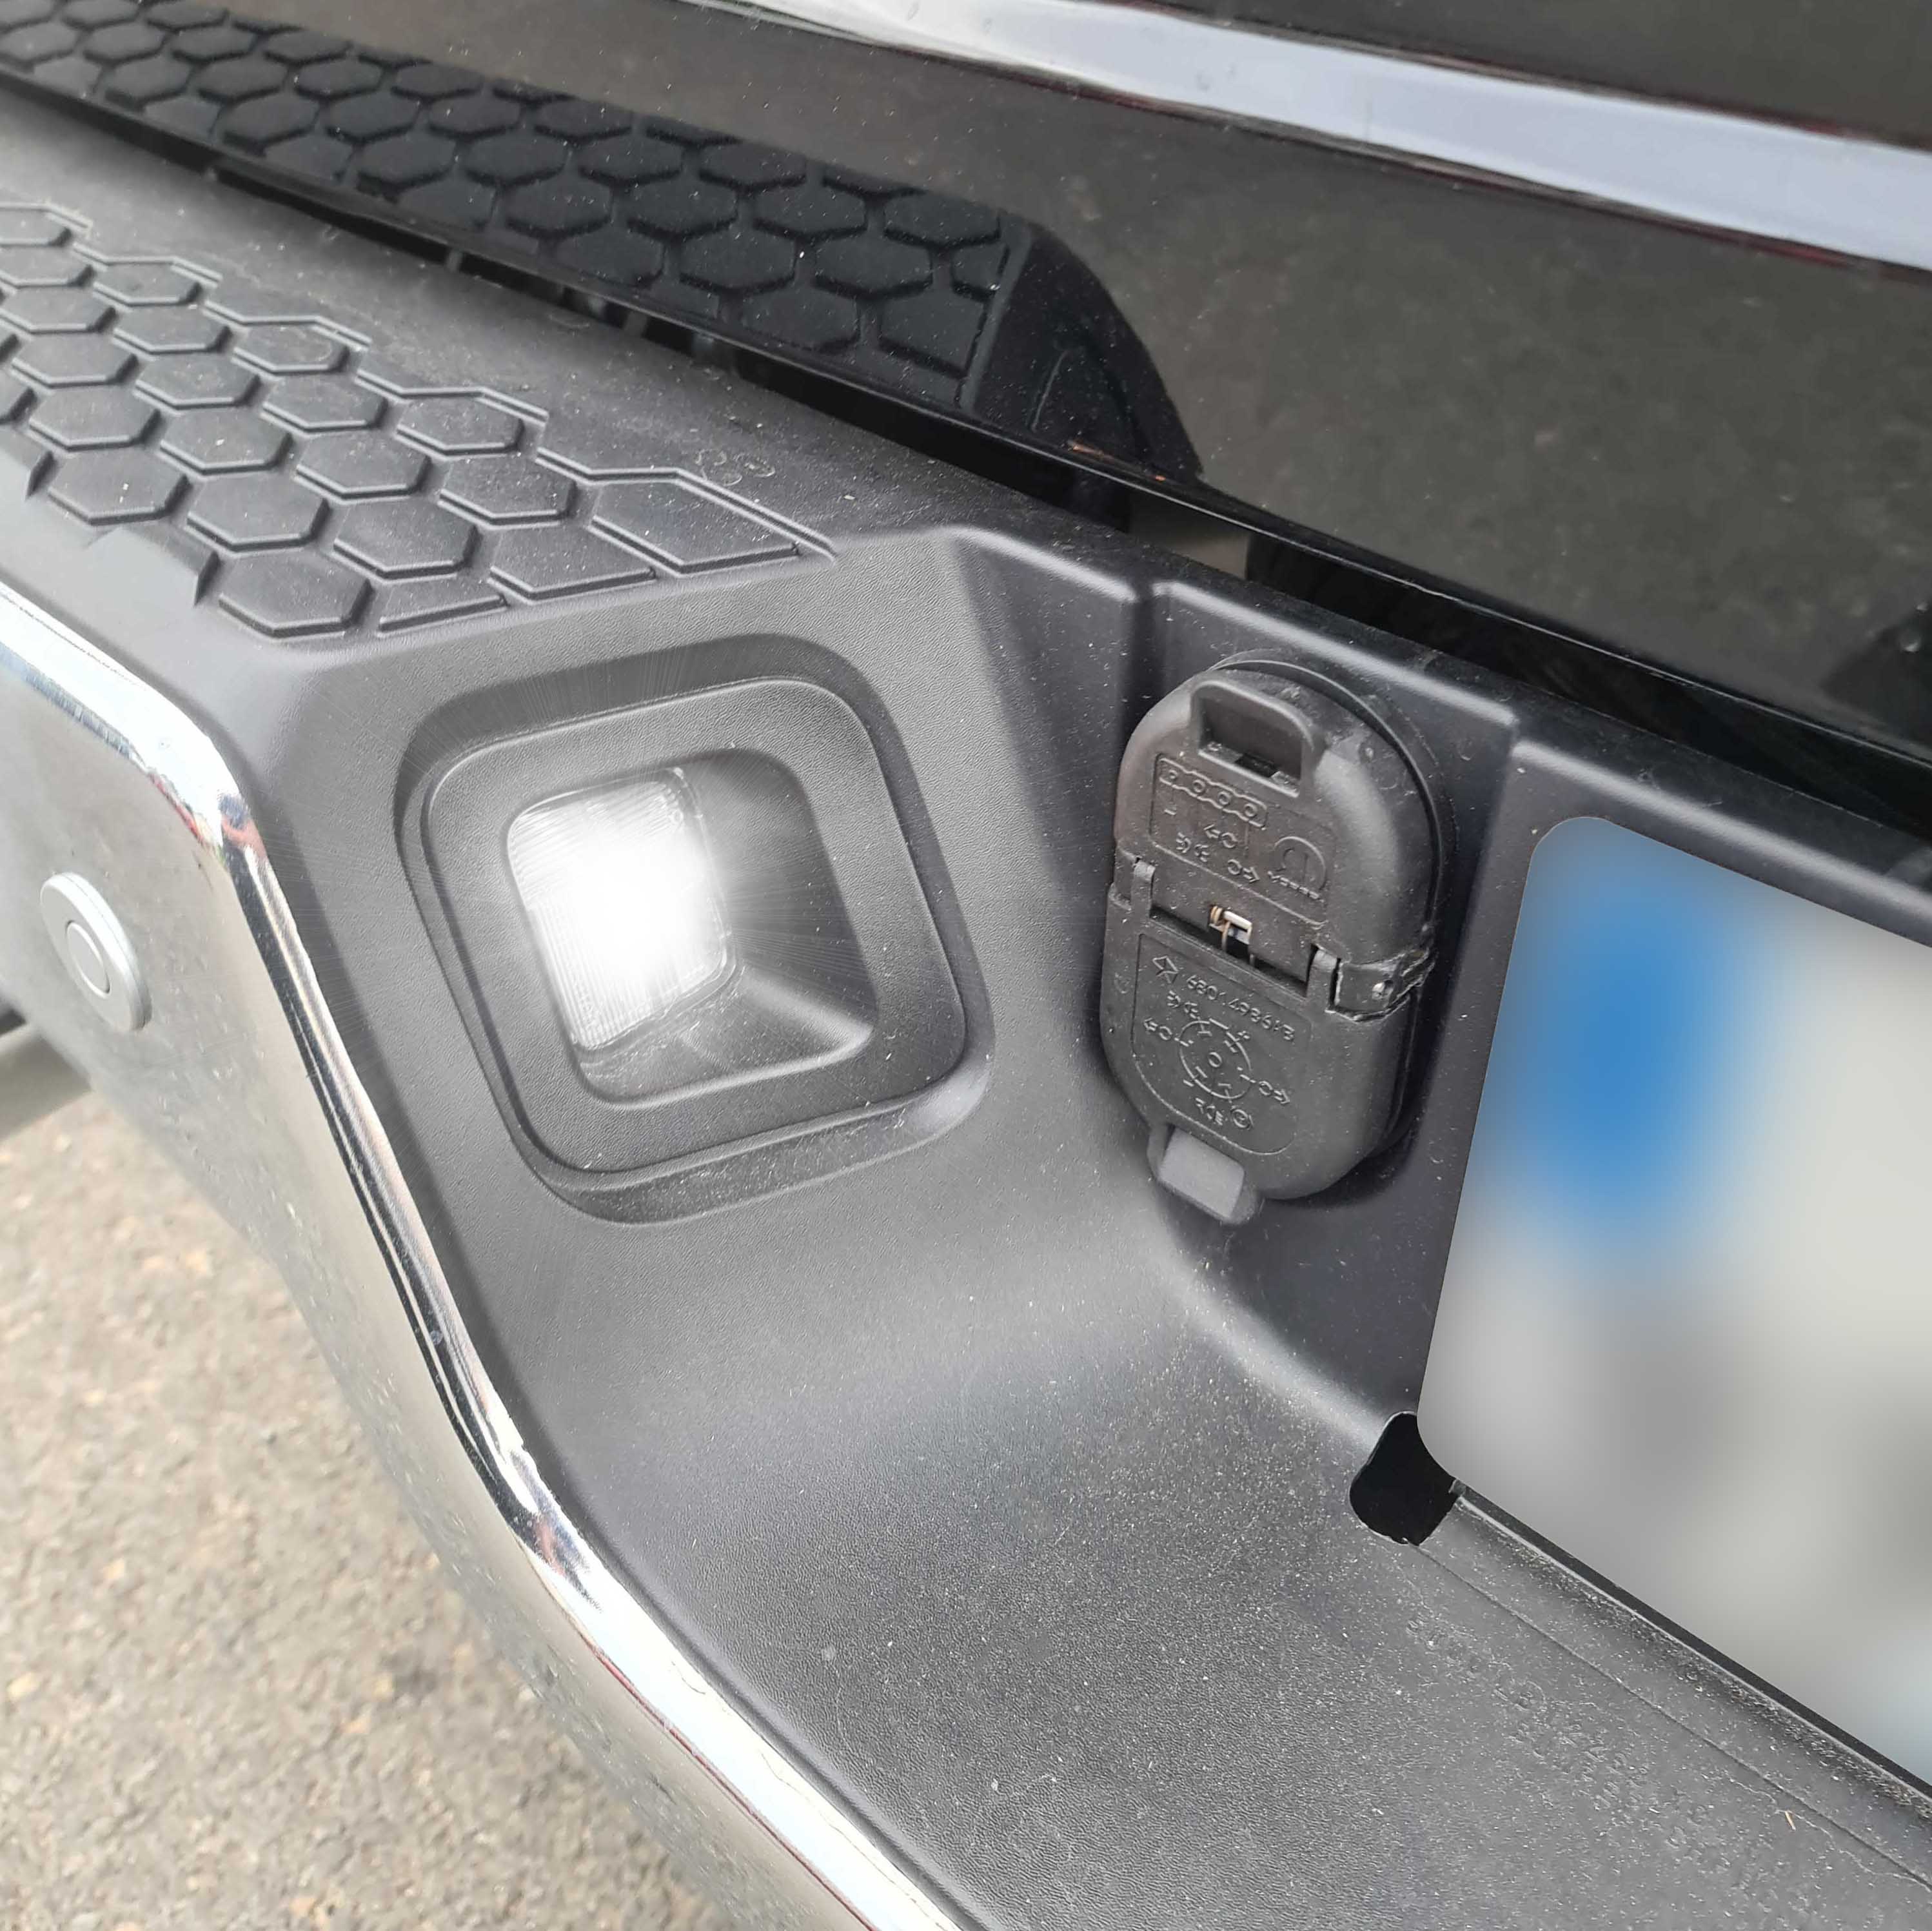 Éclairage LED plaque immatriculation - Toutes Jeep